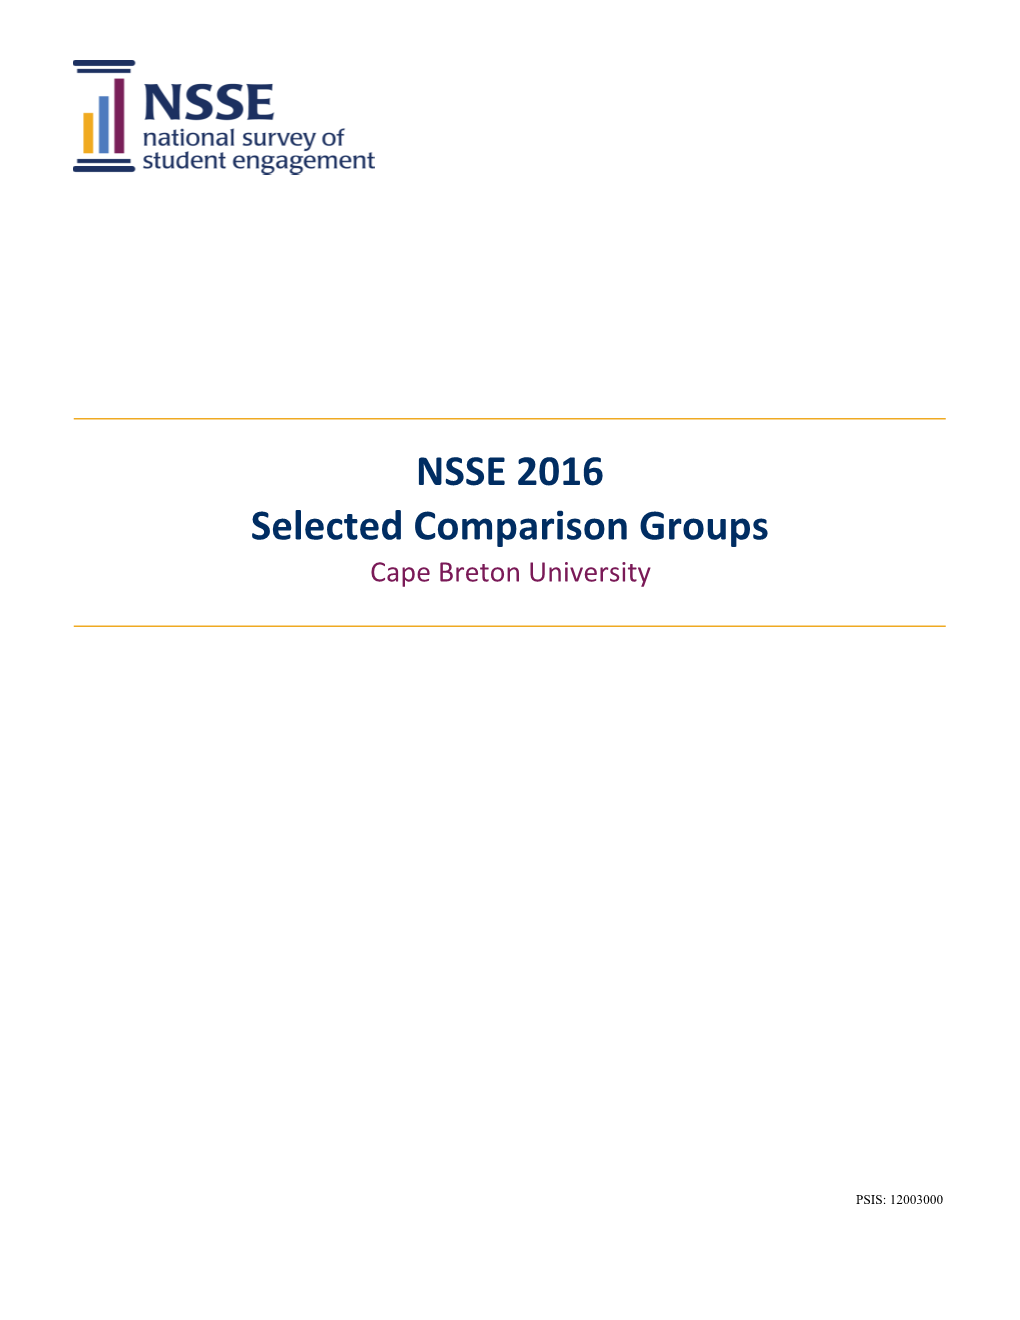 NSSE16 Selected Comparison Groups (CBU).Xlsx